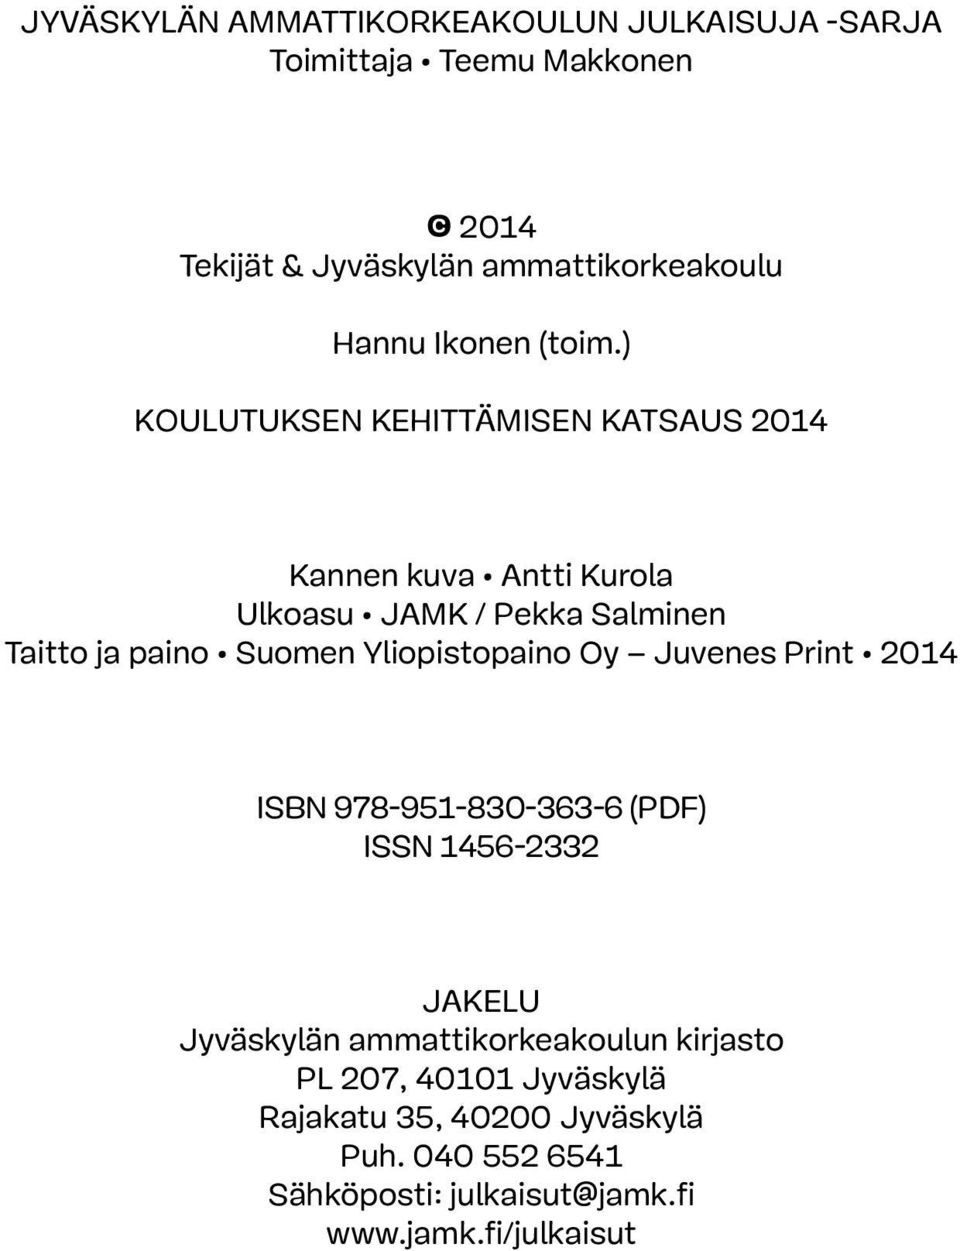 ) Koulutuksen kehittämisen katsaus 2014 Kannen kuva Antti Kurola Ulkoasu JAMK / Pekka Salminen Taitto ja paino Suomen